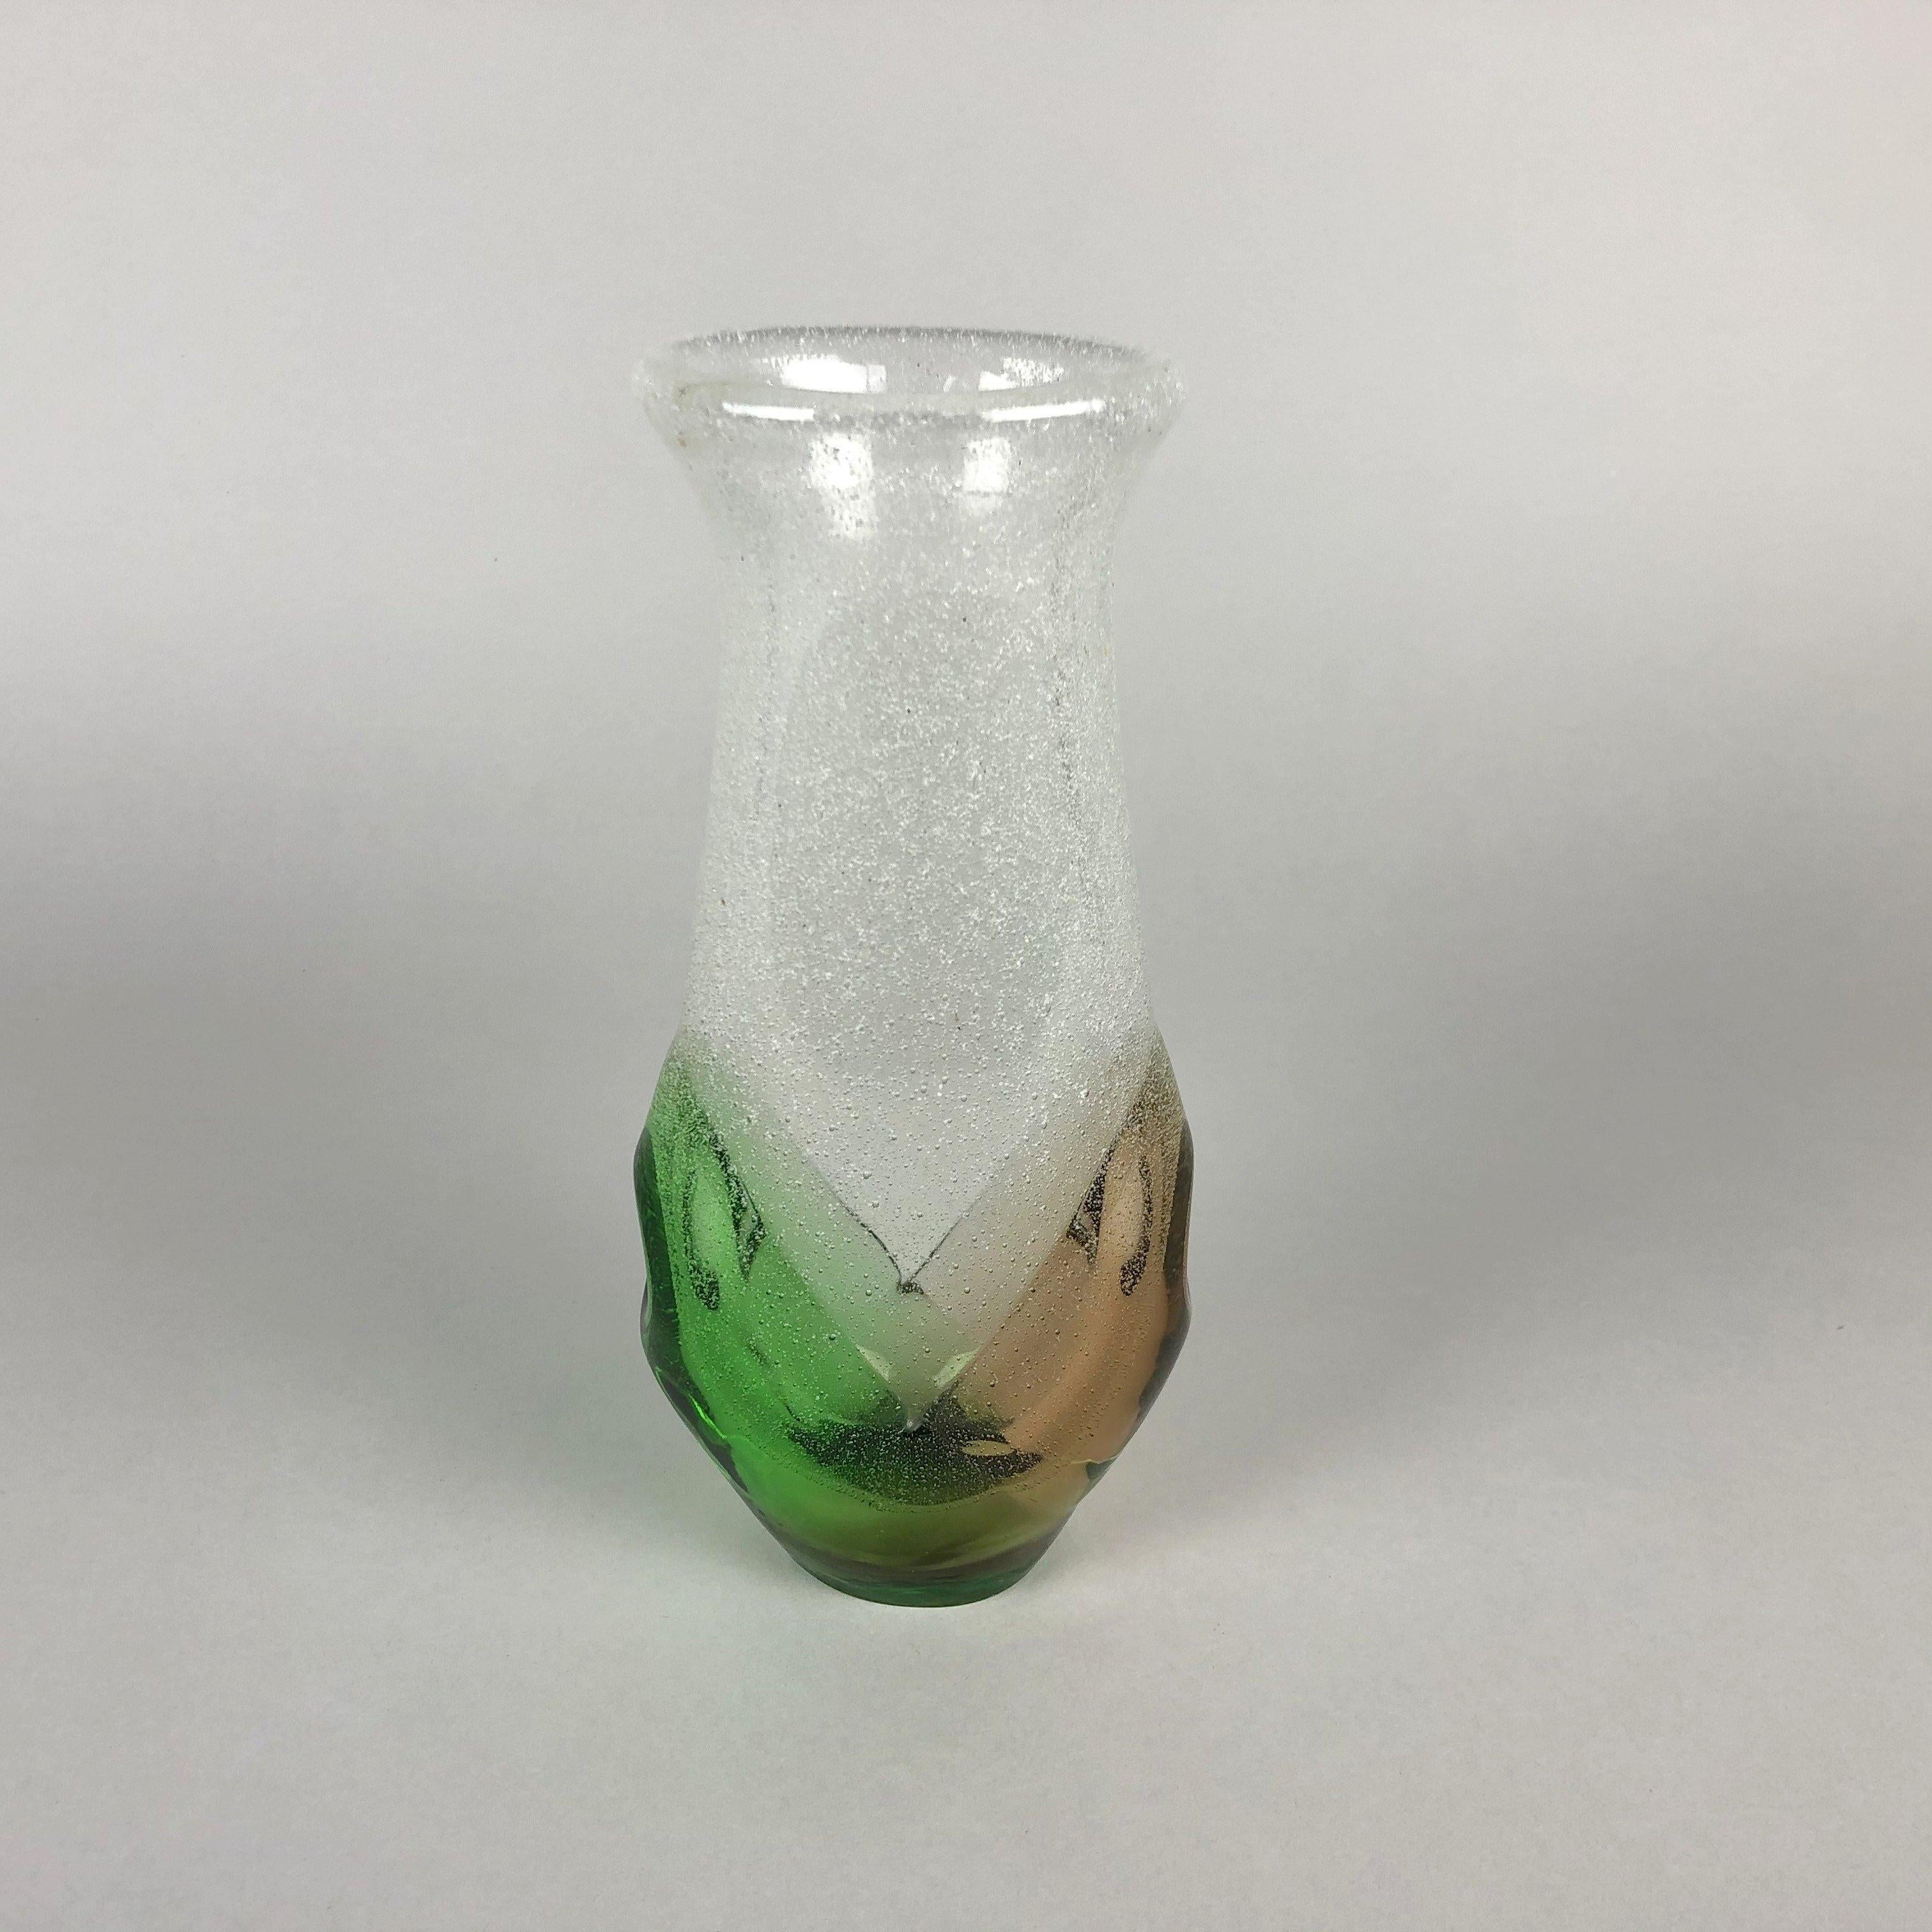 Vase en verre vintage, conçu par Frantisek Spinar en 1976 et fabriqué par la verrerie Skrdlovice en Tchécoslovaquie. 
Le vase mesure environ 23 cm de haut (9,06 pouces), 10,5 cm (4,13 pouces) de large au point le plus large et environ 6 cm (2,36